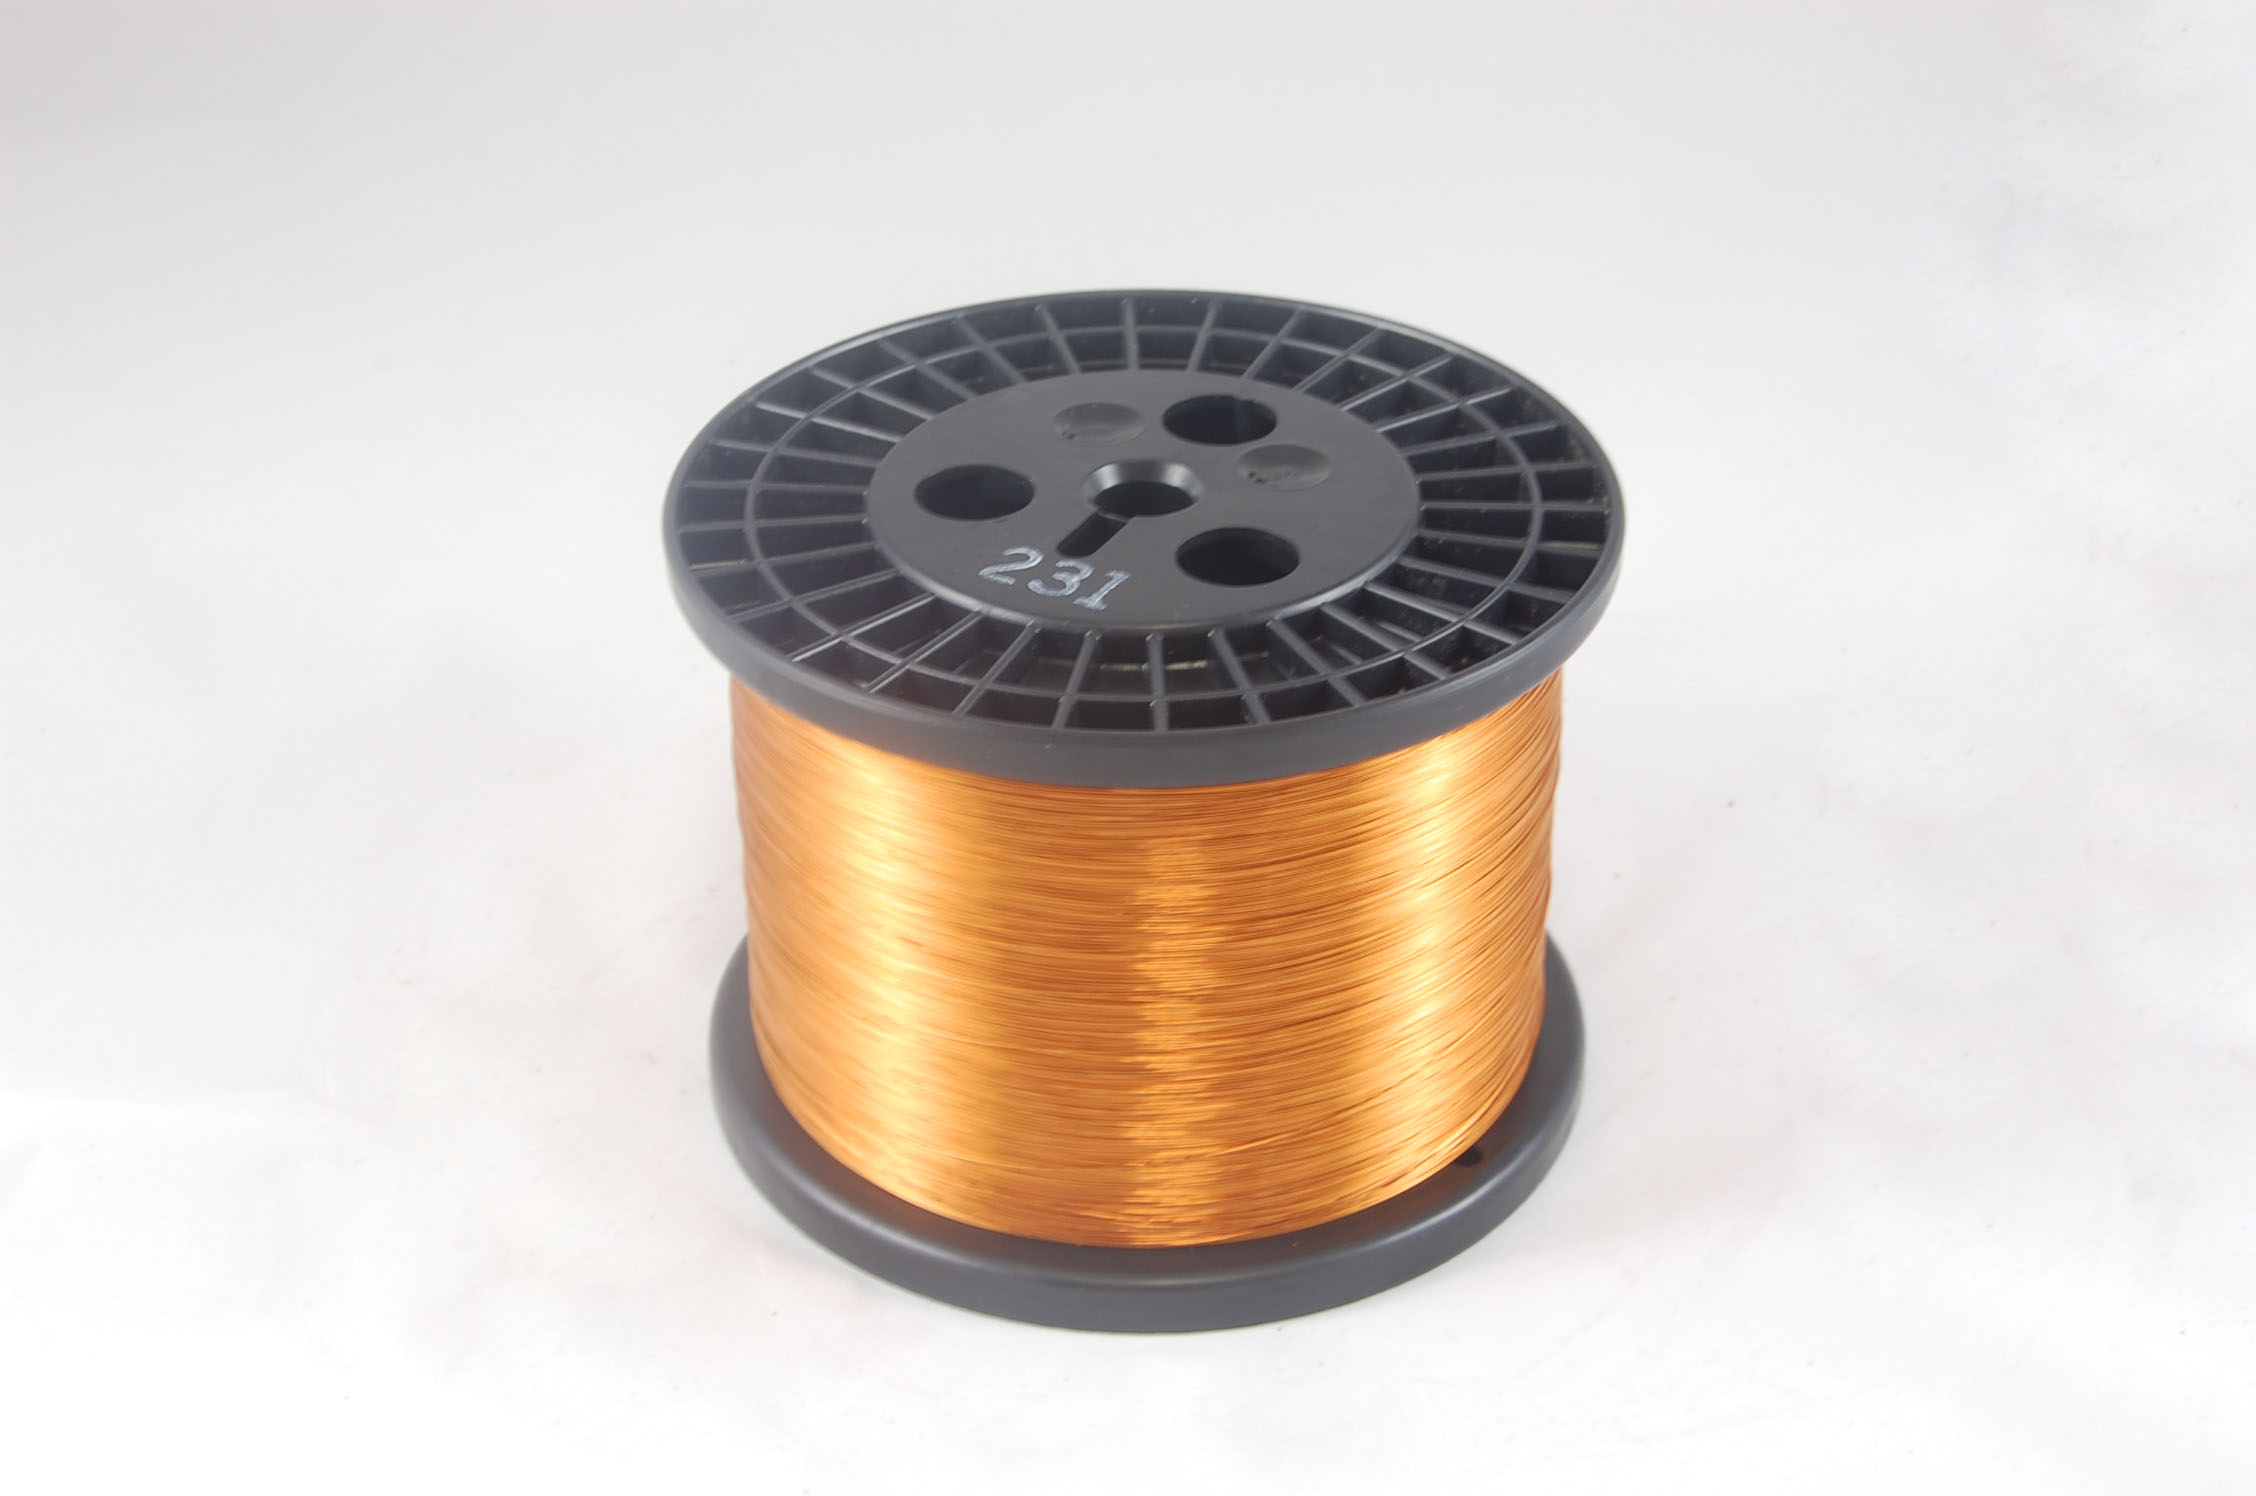 #21 Heavy GP/MR-200 Round MW 35 Copper Magnet Wire 200°C, copper, 10 LB 6" spool (average wght.)